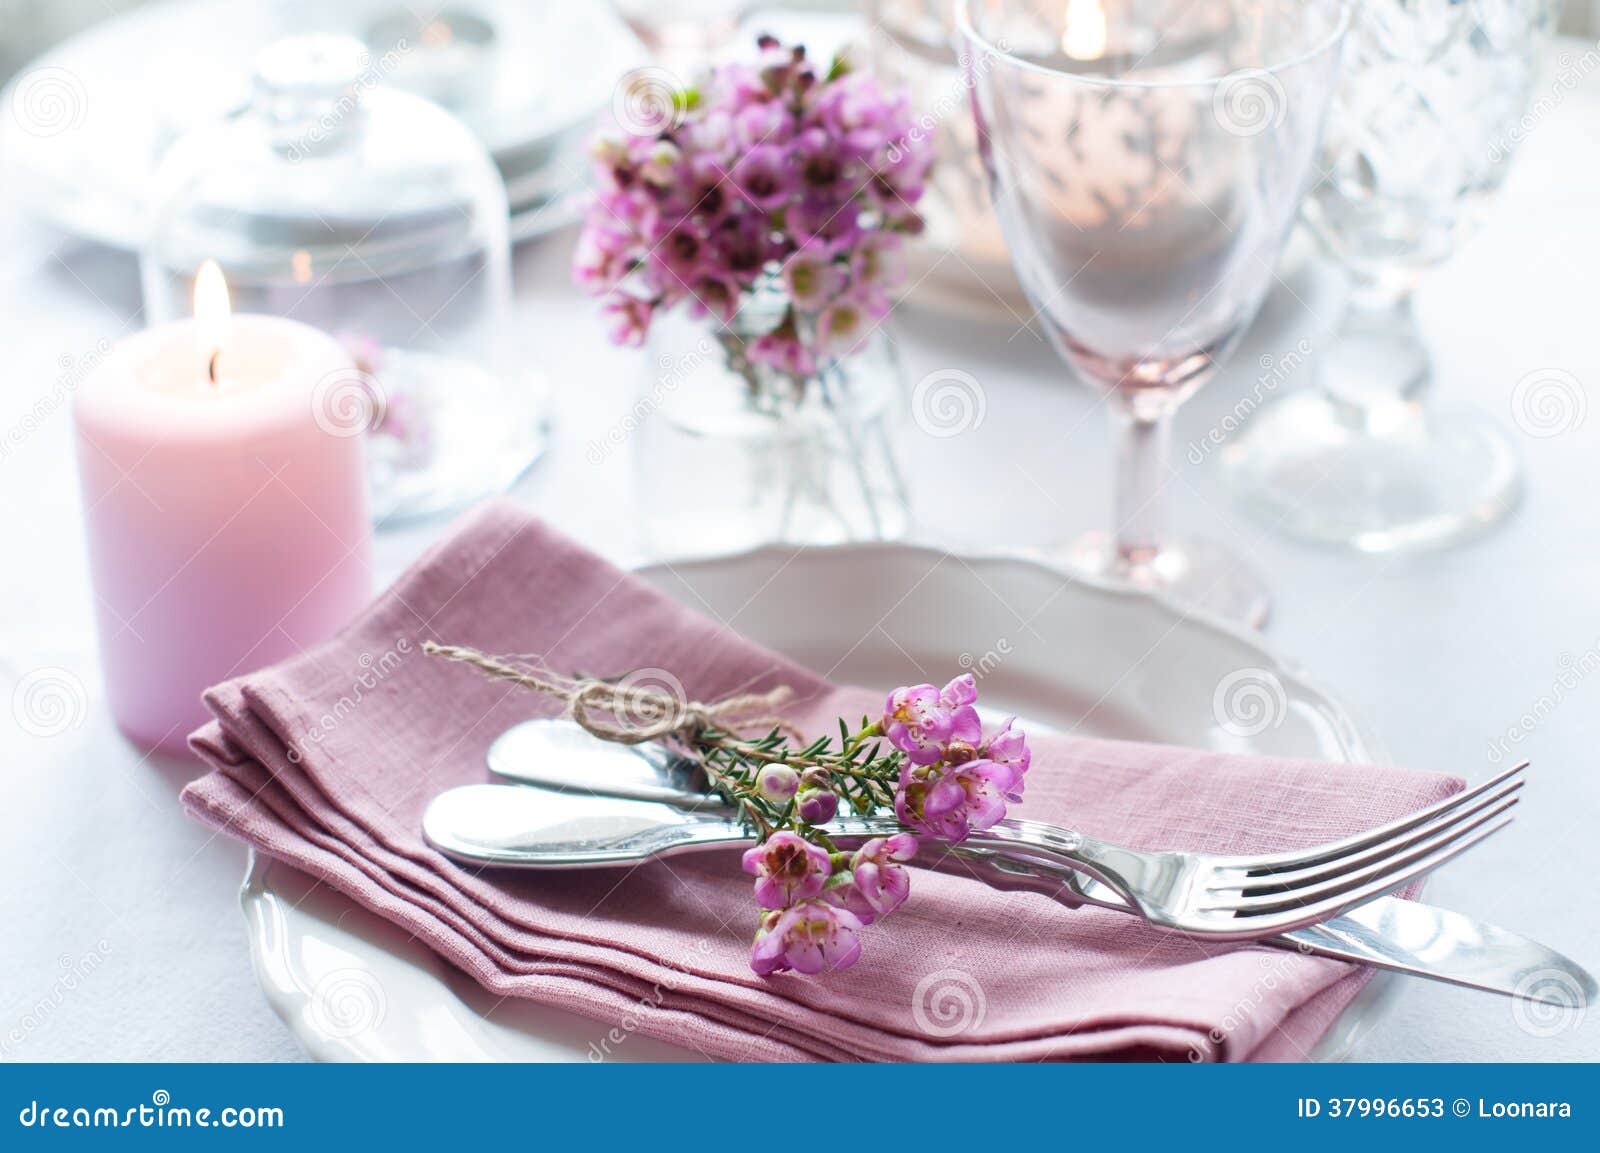 Festive Wedding Table Setting Stock Image - Image of ...